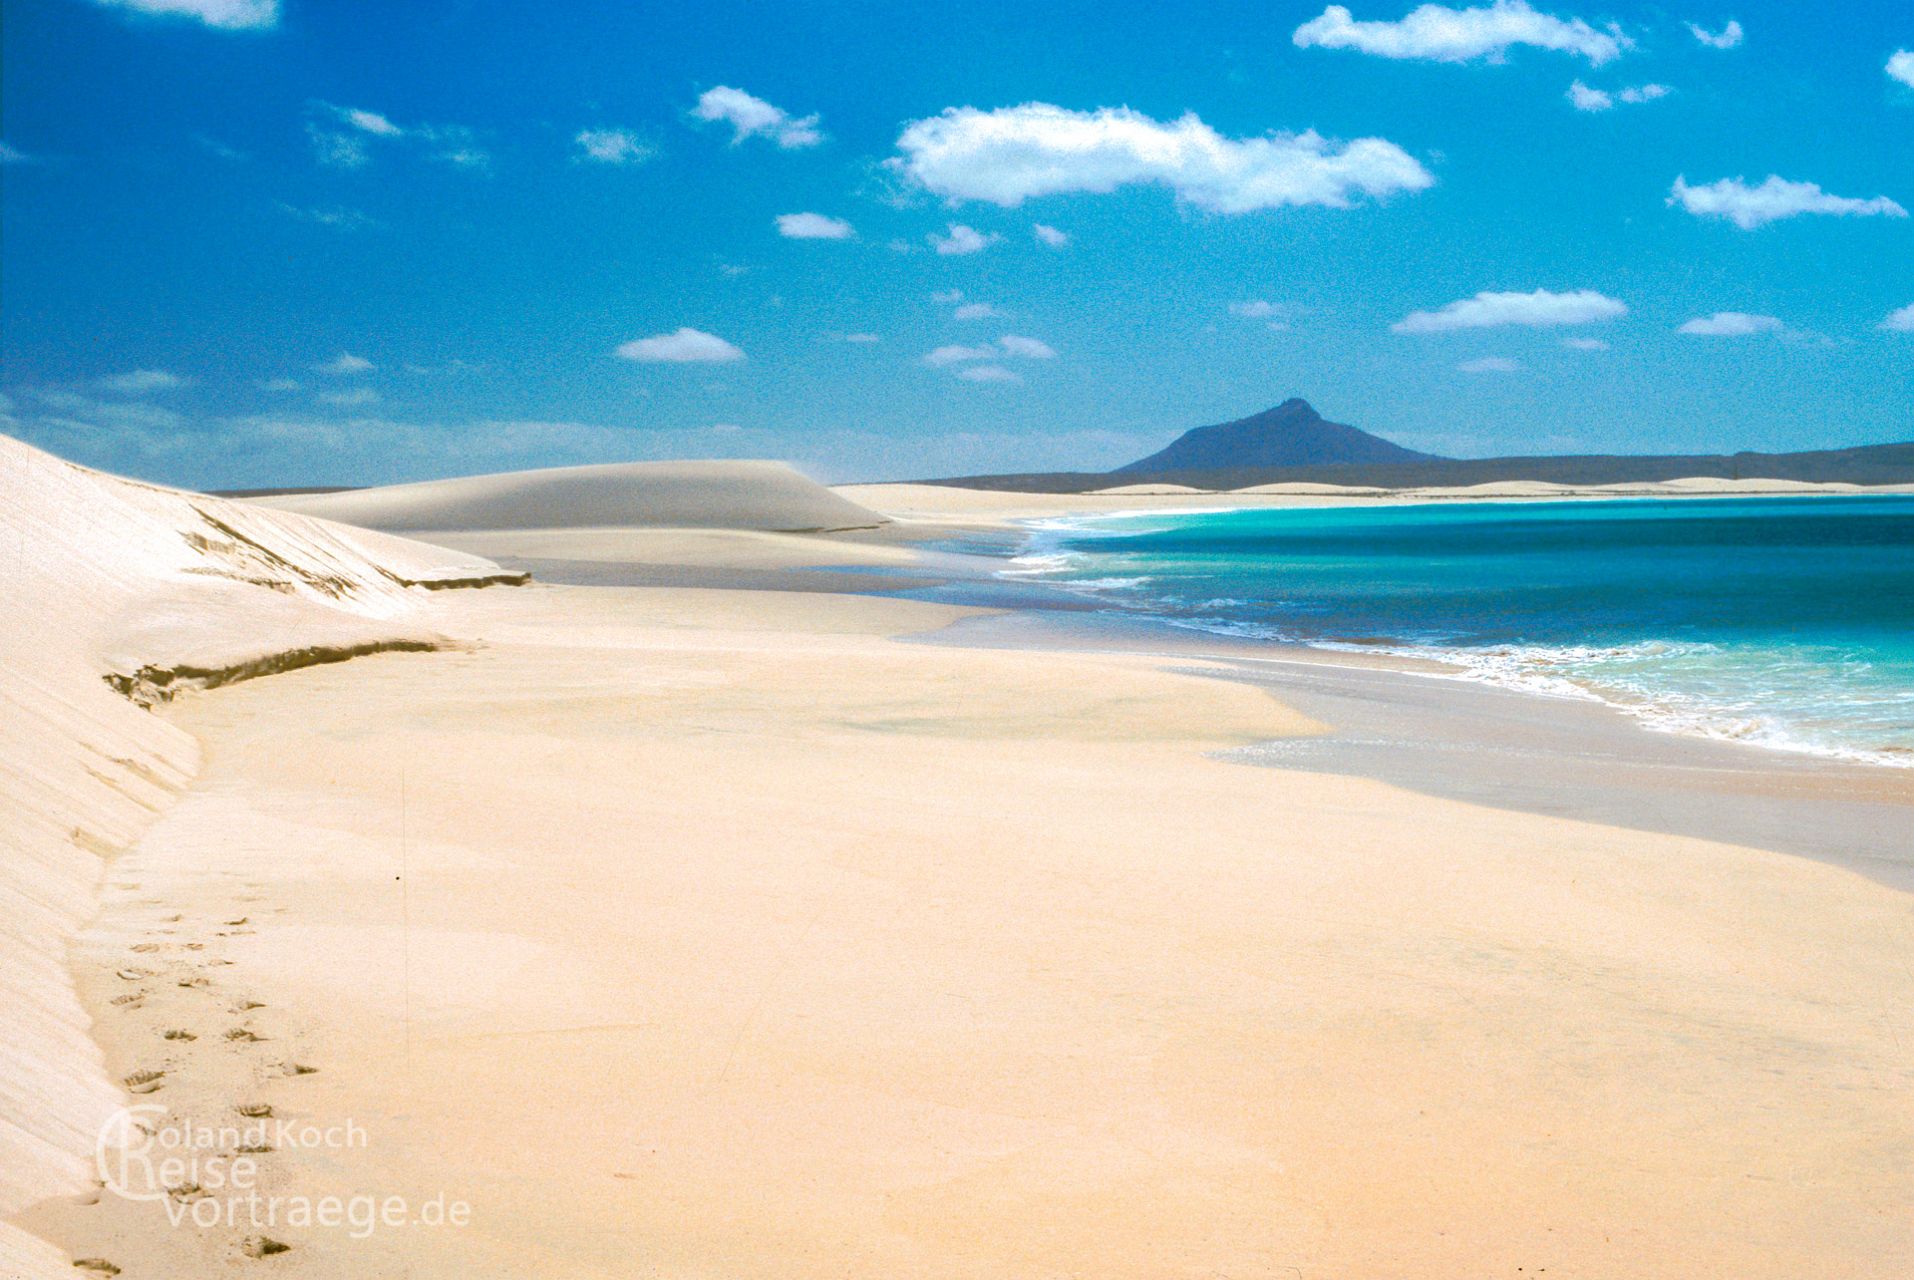 Cape Verde - Boa Vista - dream beach near Sal Rei at Praia de Chaves